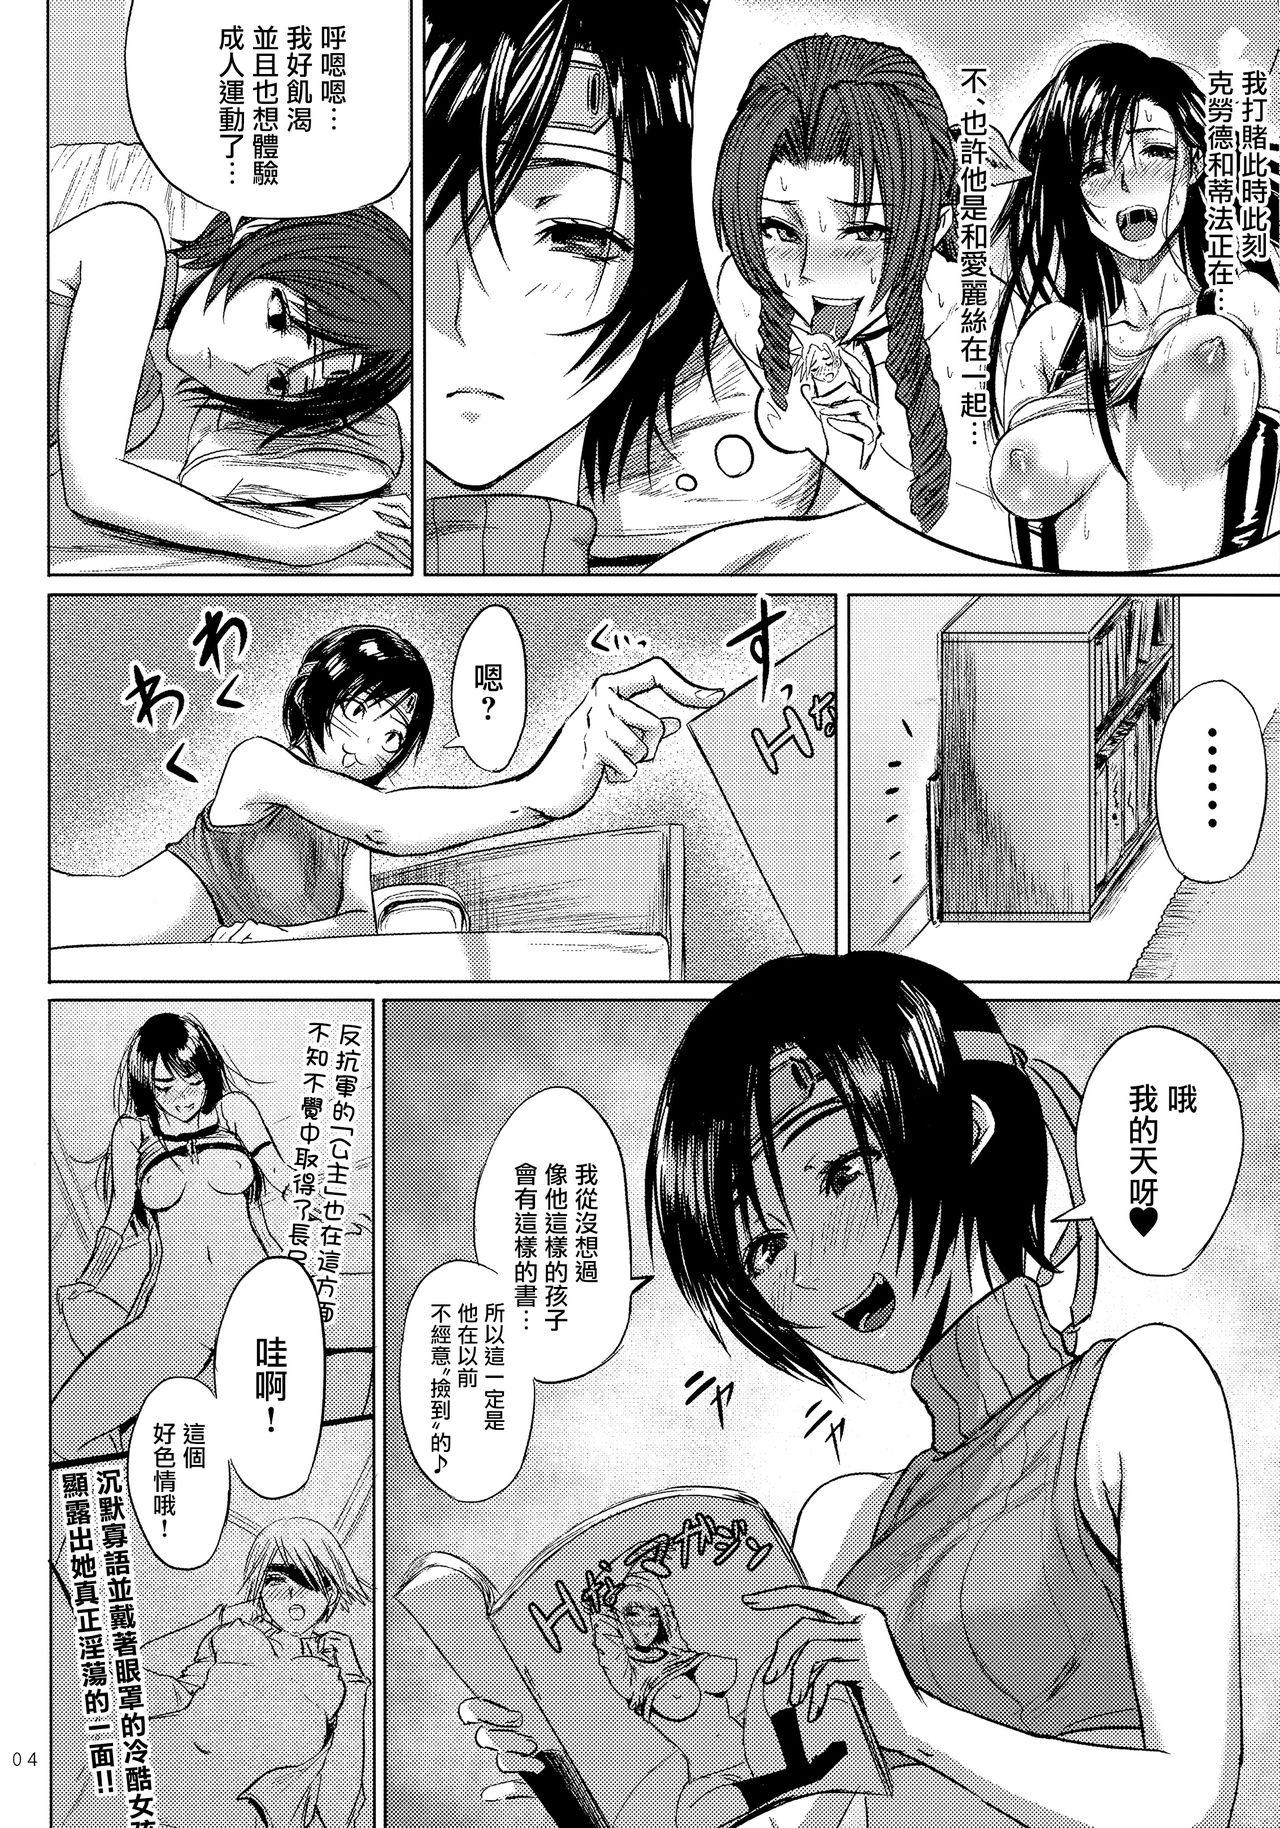 Lingerie Shinobi no Musume wa Ijiritai Zakari 2 - Final fantasy vii Gay Kissing - Page 6